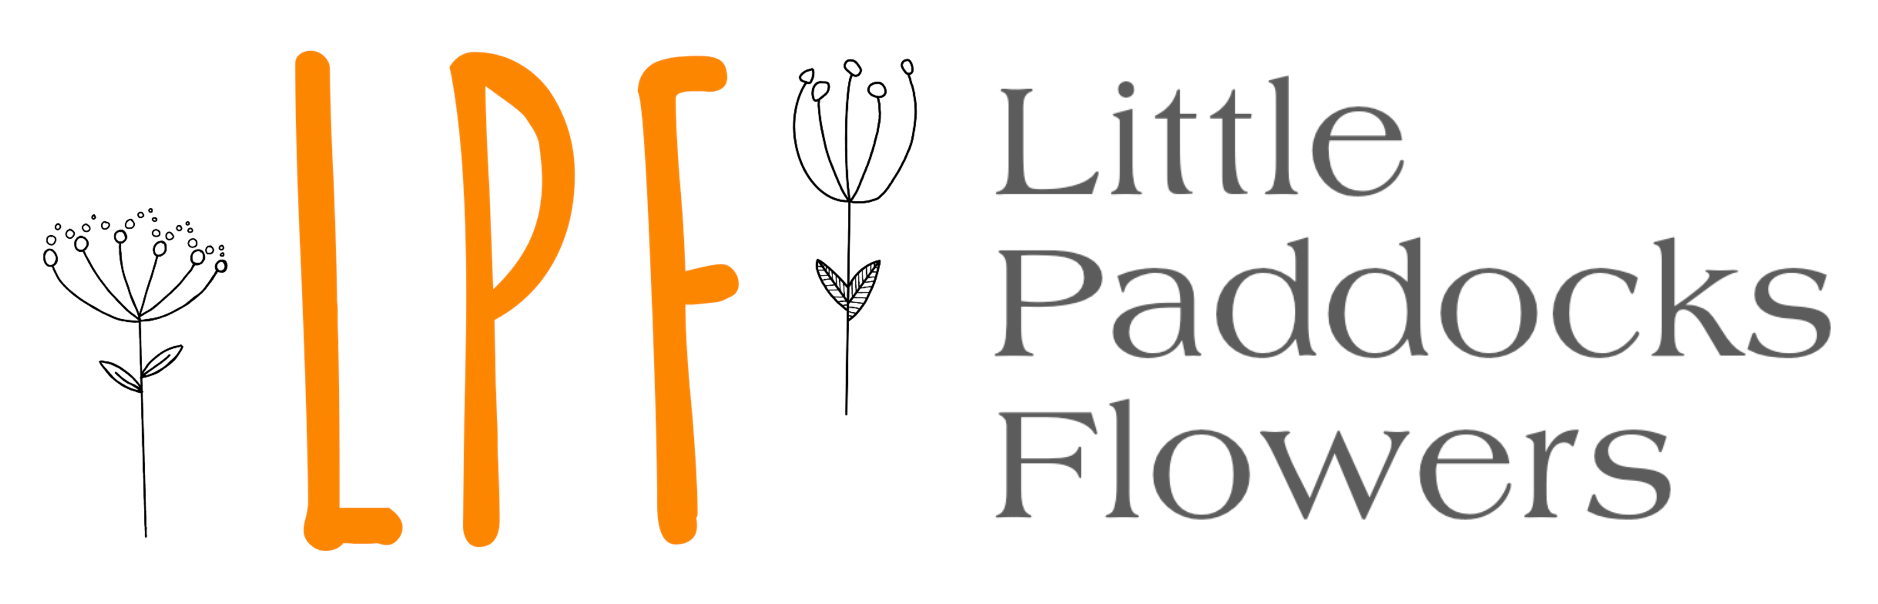 Little Paddocks Flowers